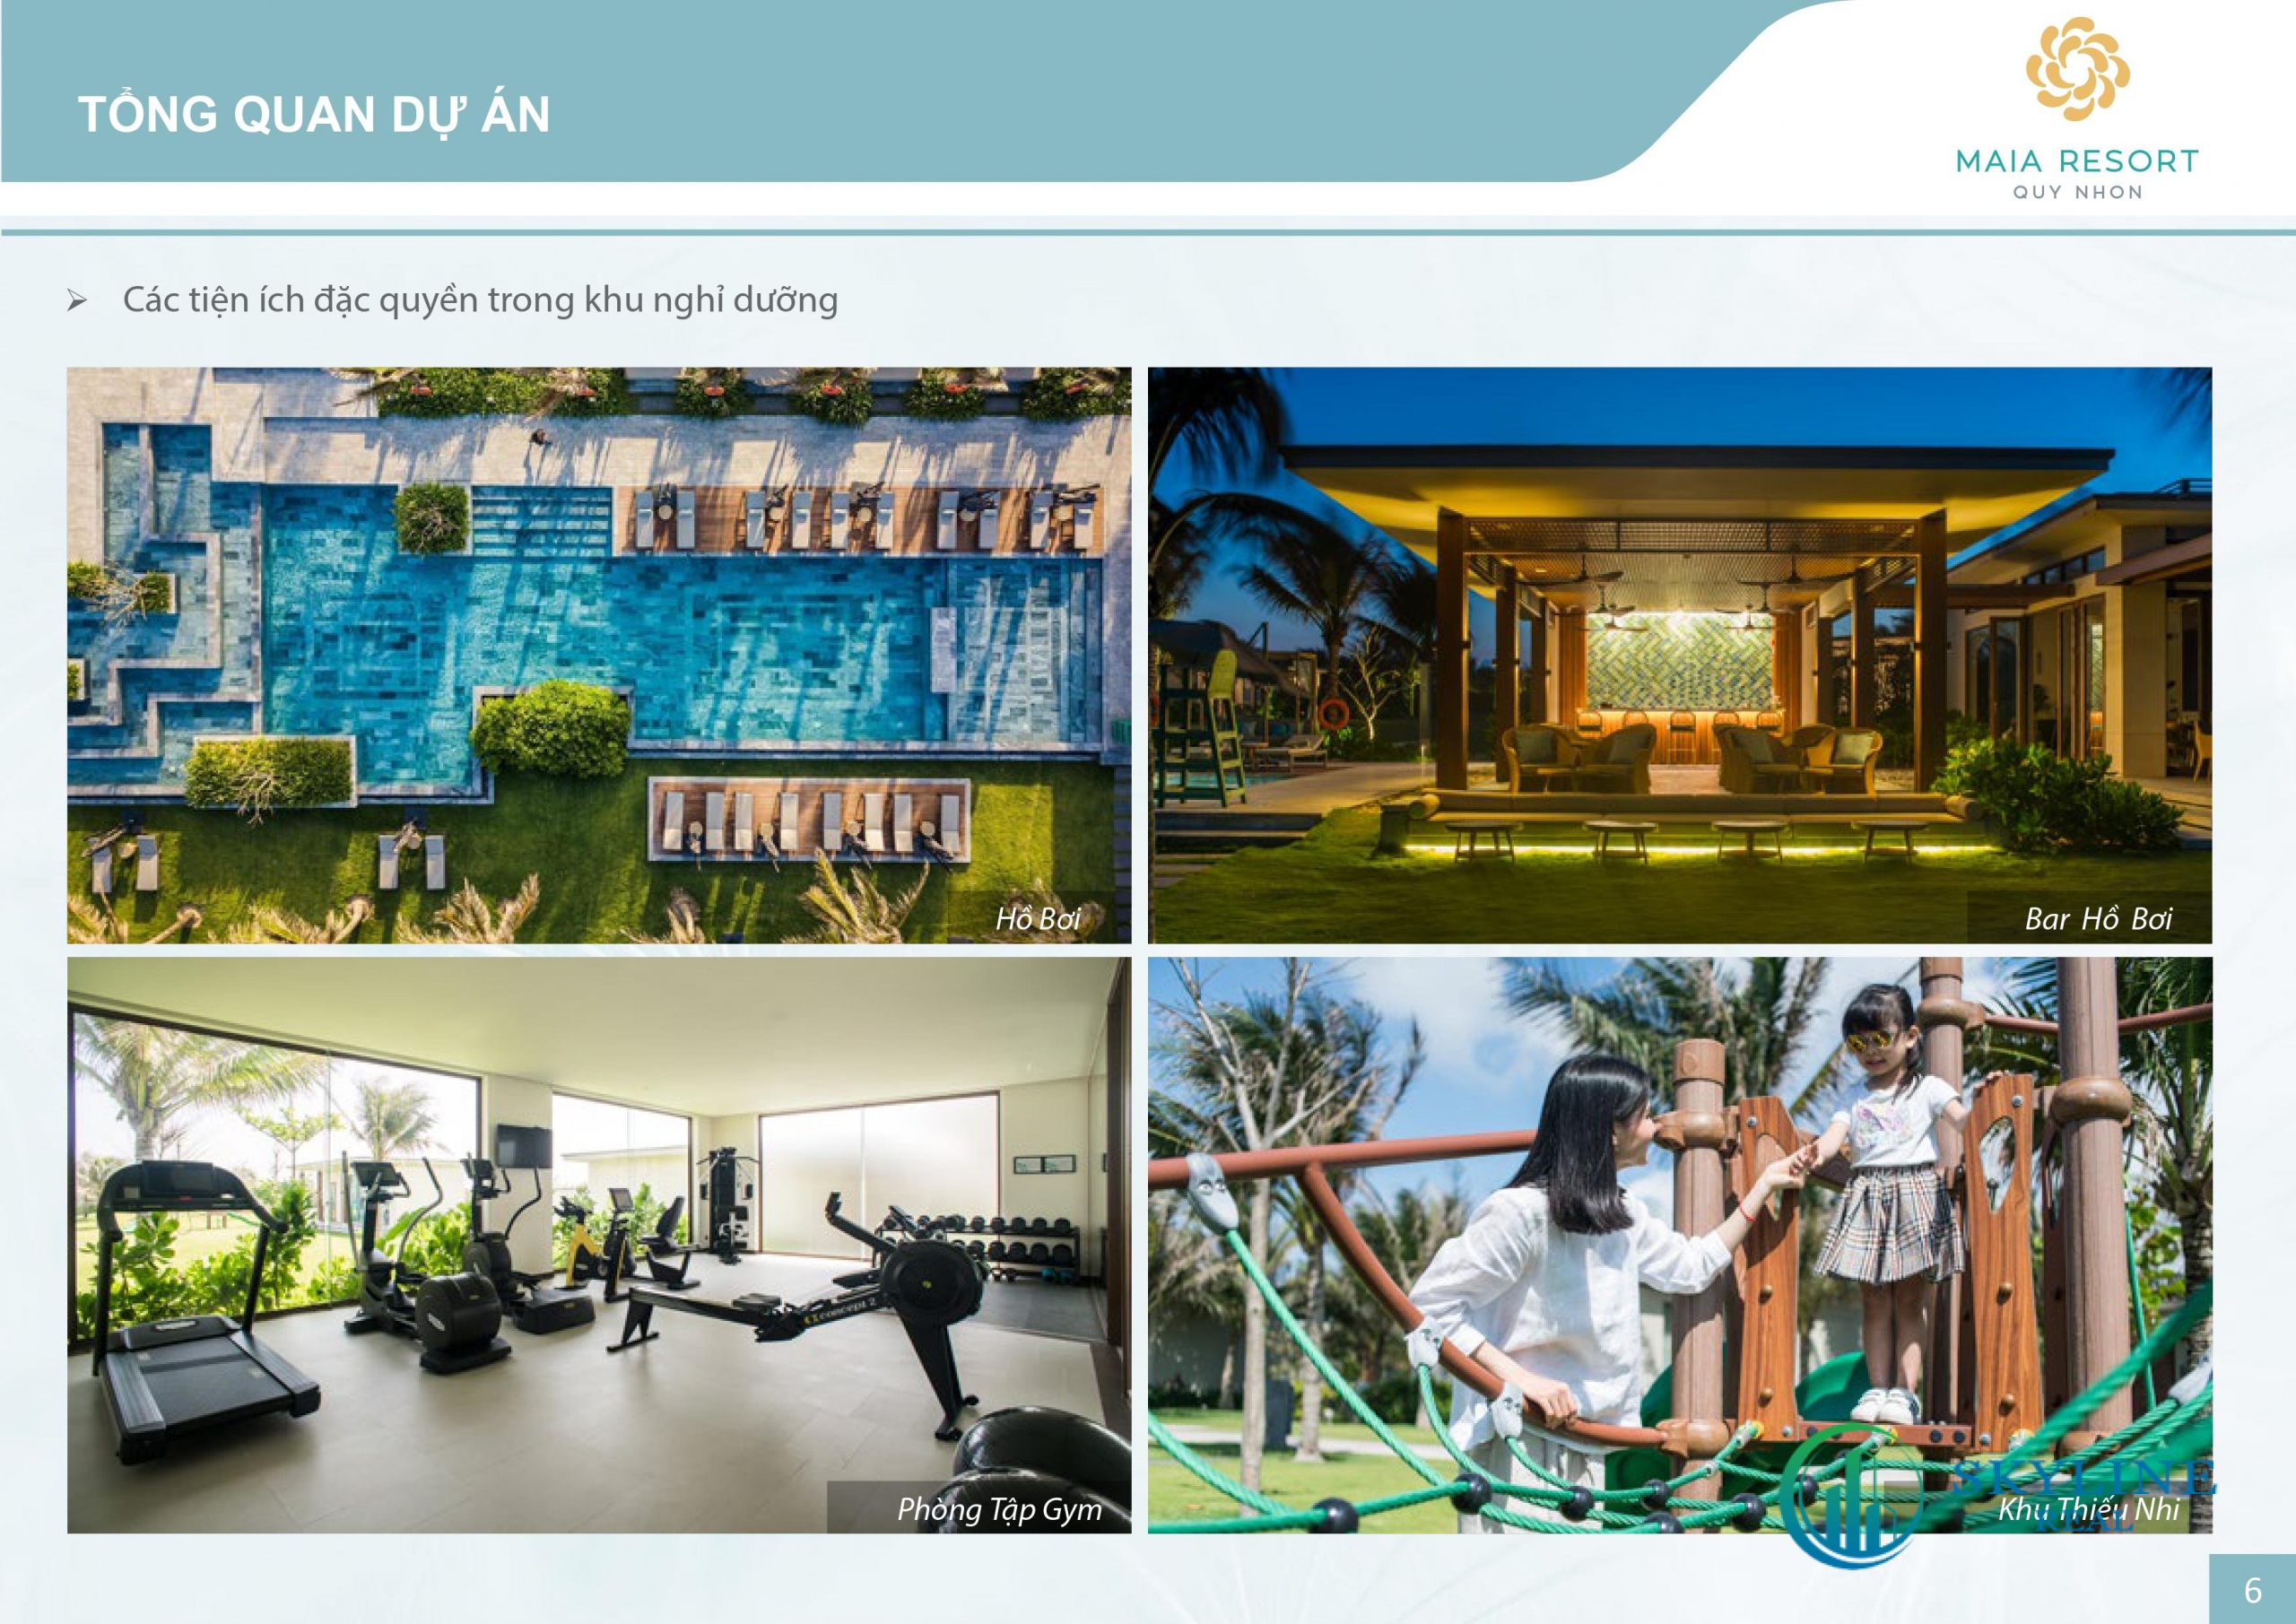 Tiện ích nổi bật dự án Maia Resort Quy Nhơn 